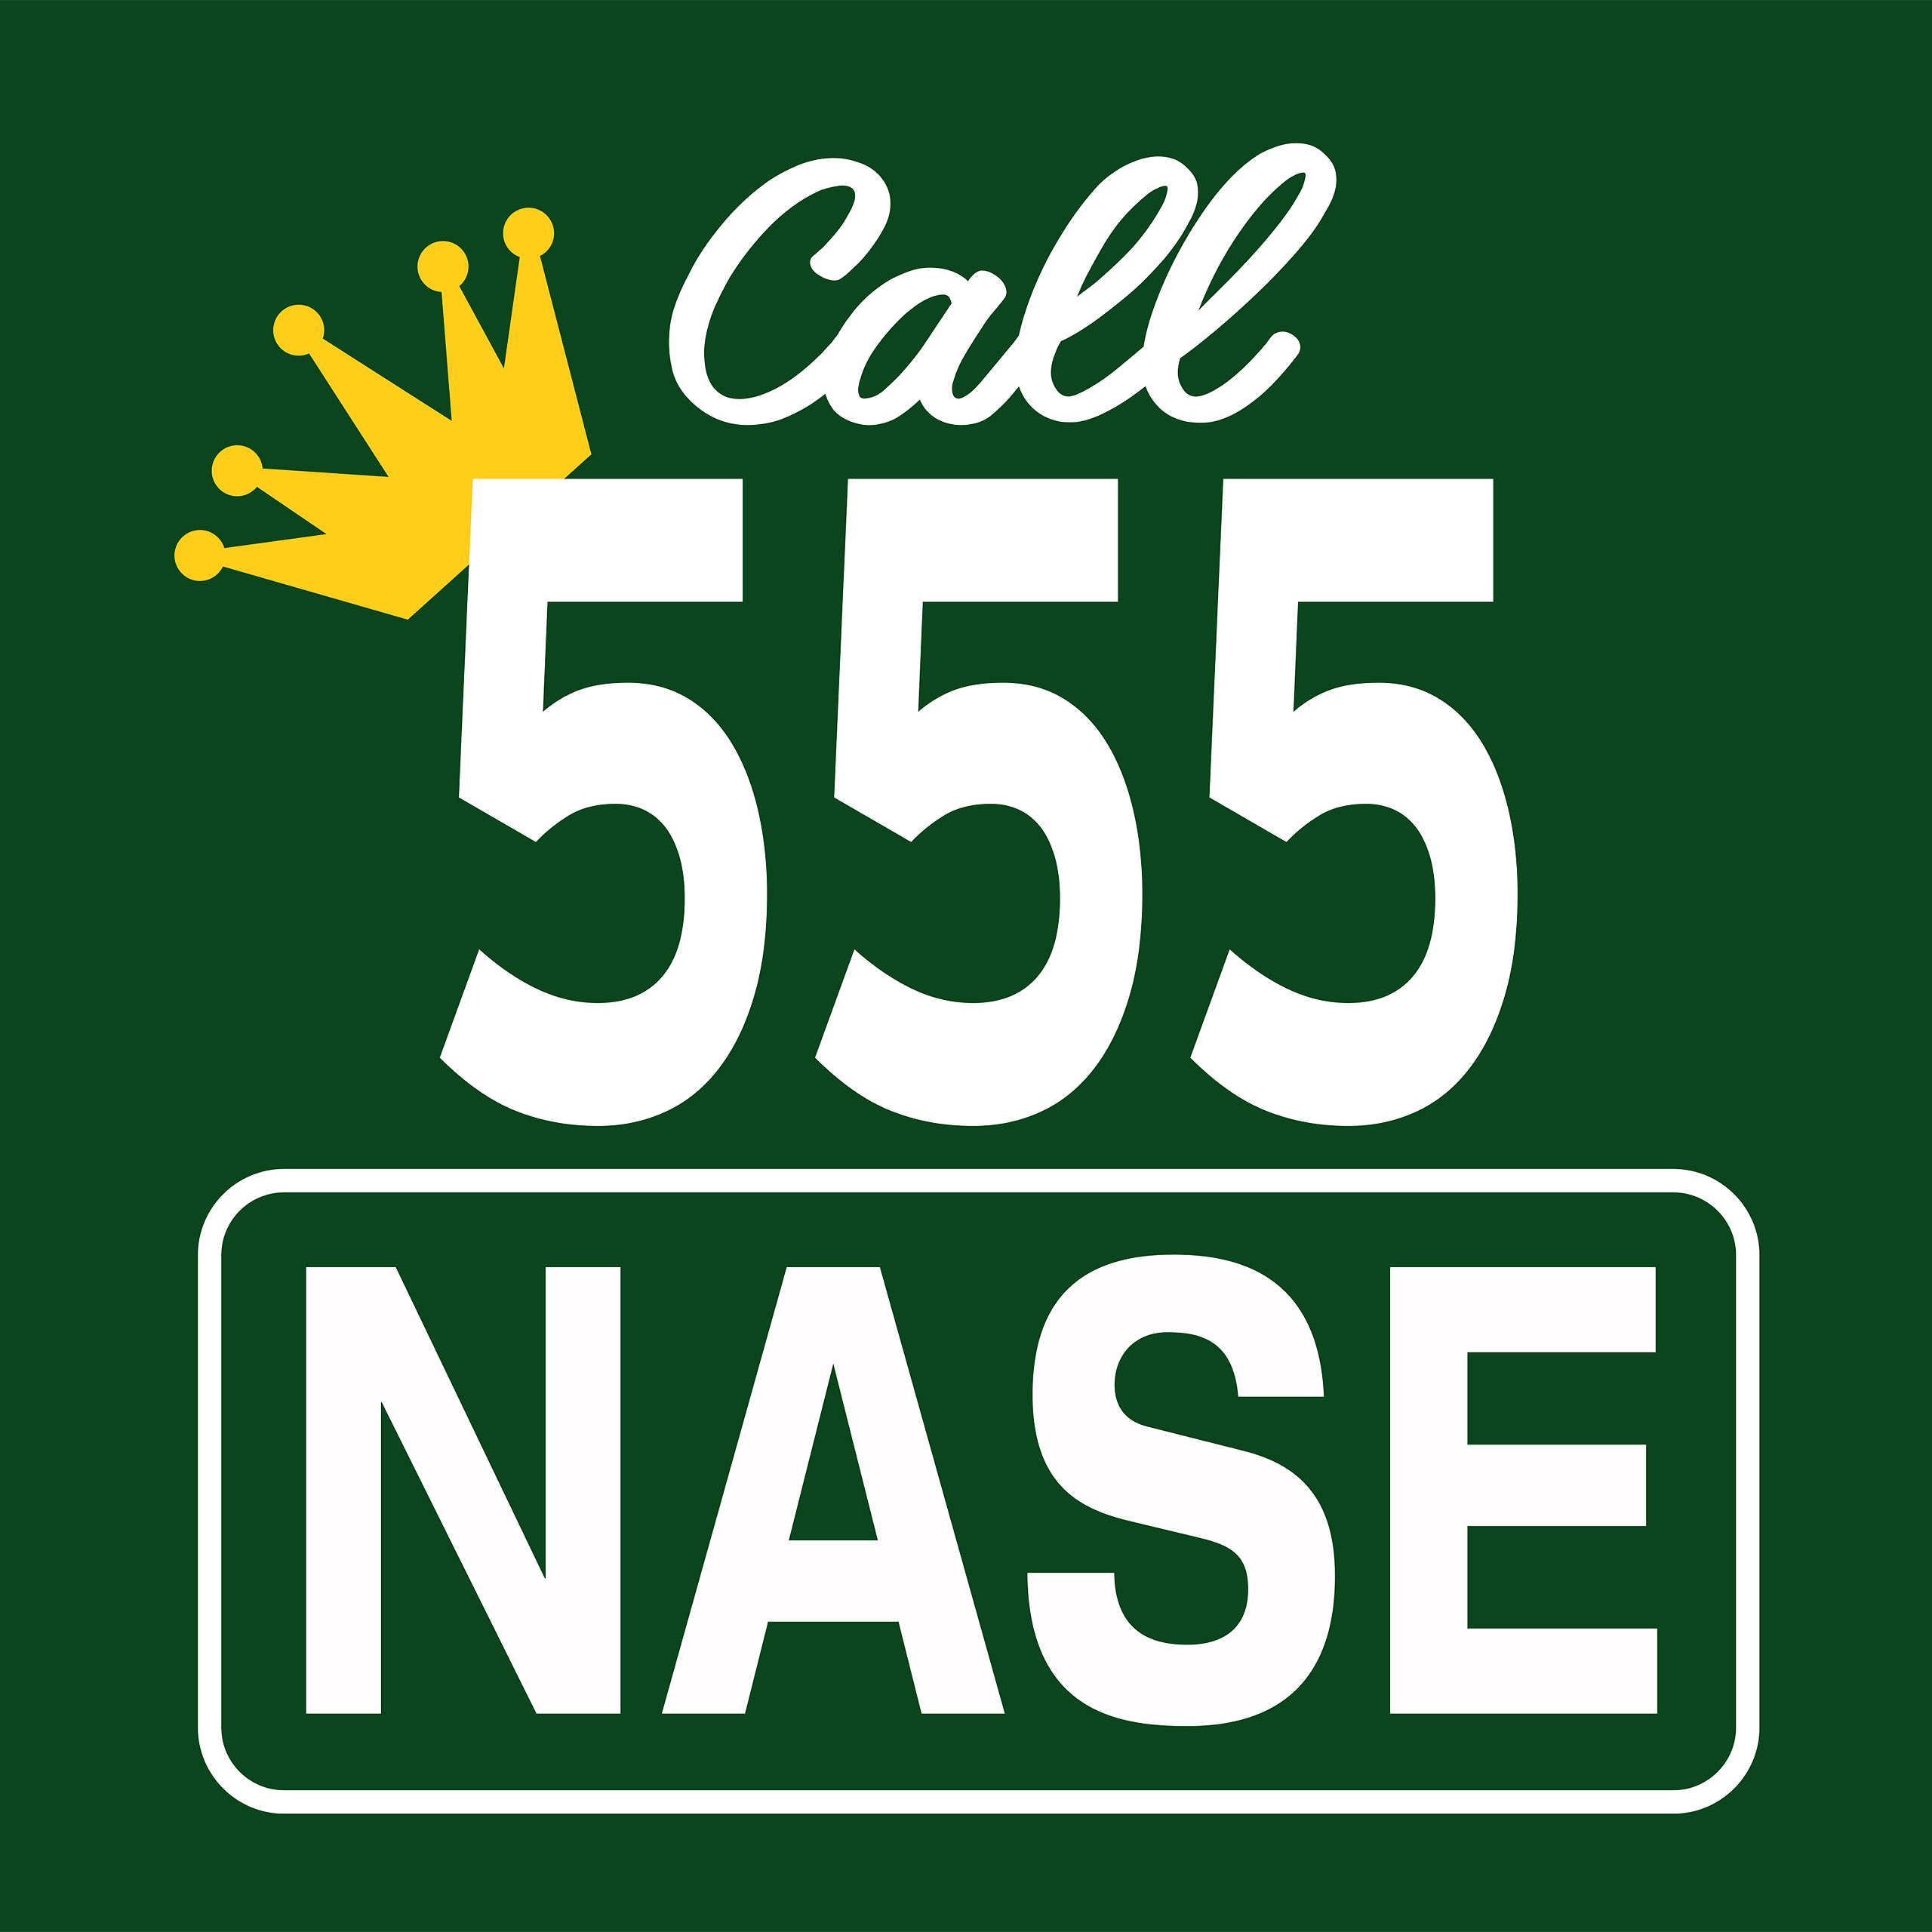 Call 555 Nase T-Shirt für King of Queens Fans grün